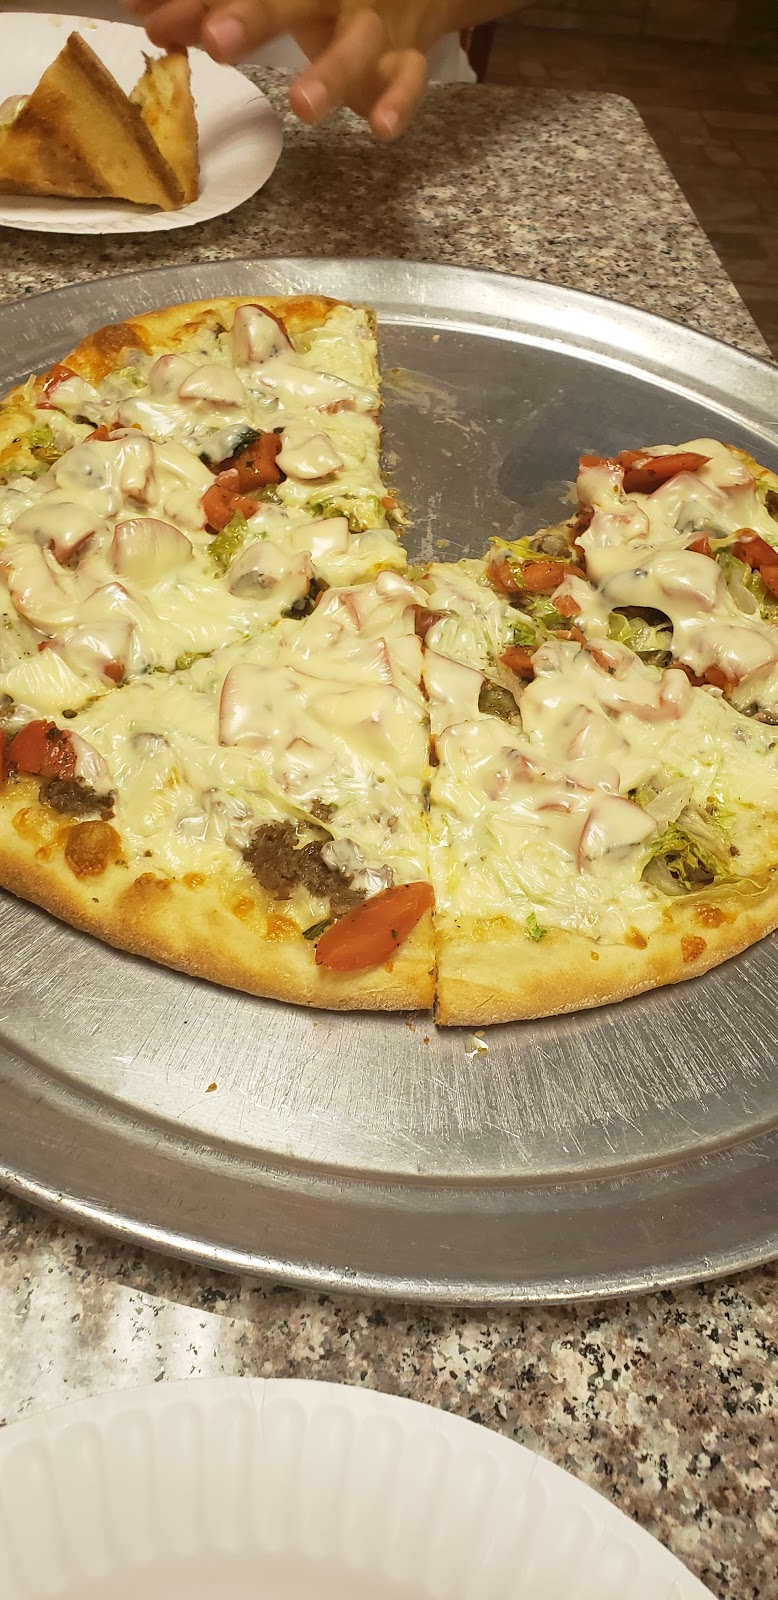 Giovanni Italian Style Pizza and Restaurant | 1 N Virginia Ave, Penns Grove, NJ 08069 | Phone: (856) 351-0700